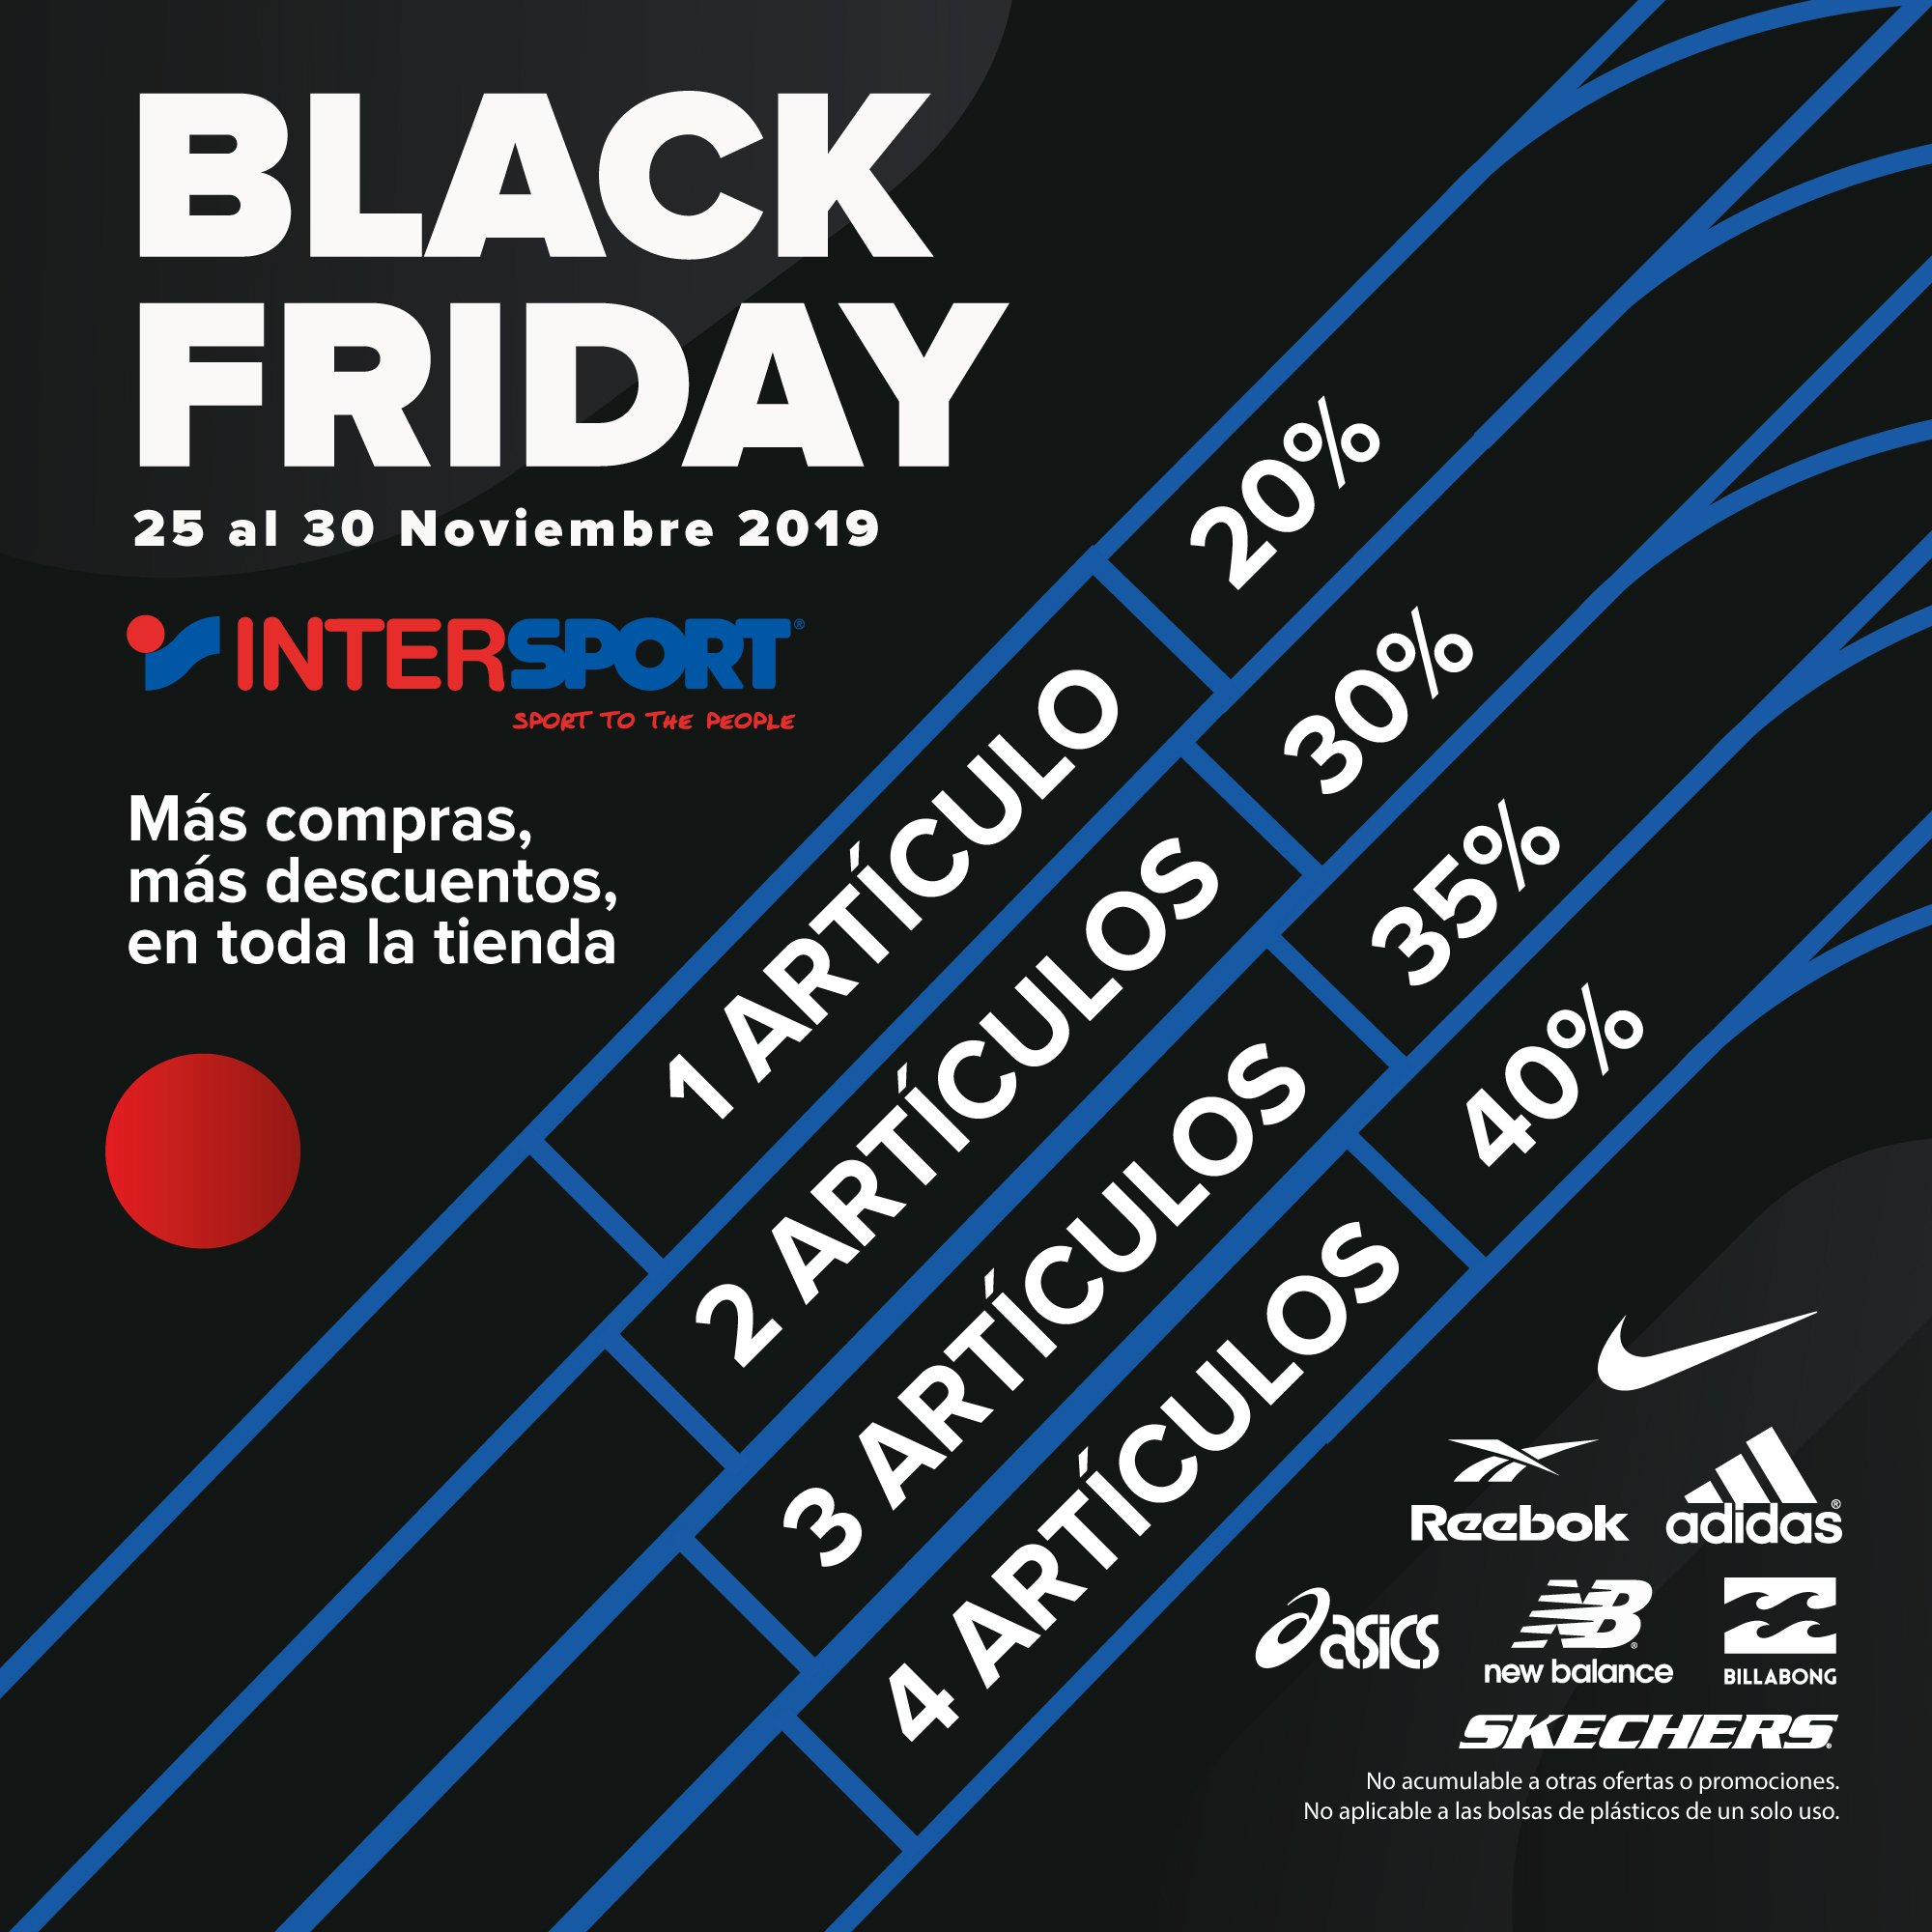 Intersport Hobby Twitter: "¿Vas a dejar escapar el #BlackFriday de #Intersport? ¡Cuanto más compras, más ¡#Descuentos en toda la tienda! esperamos en tiendas #Intersport de #Huelva y #Barbate!